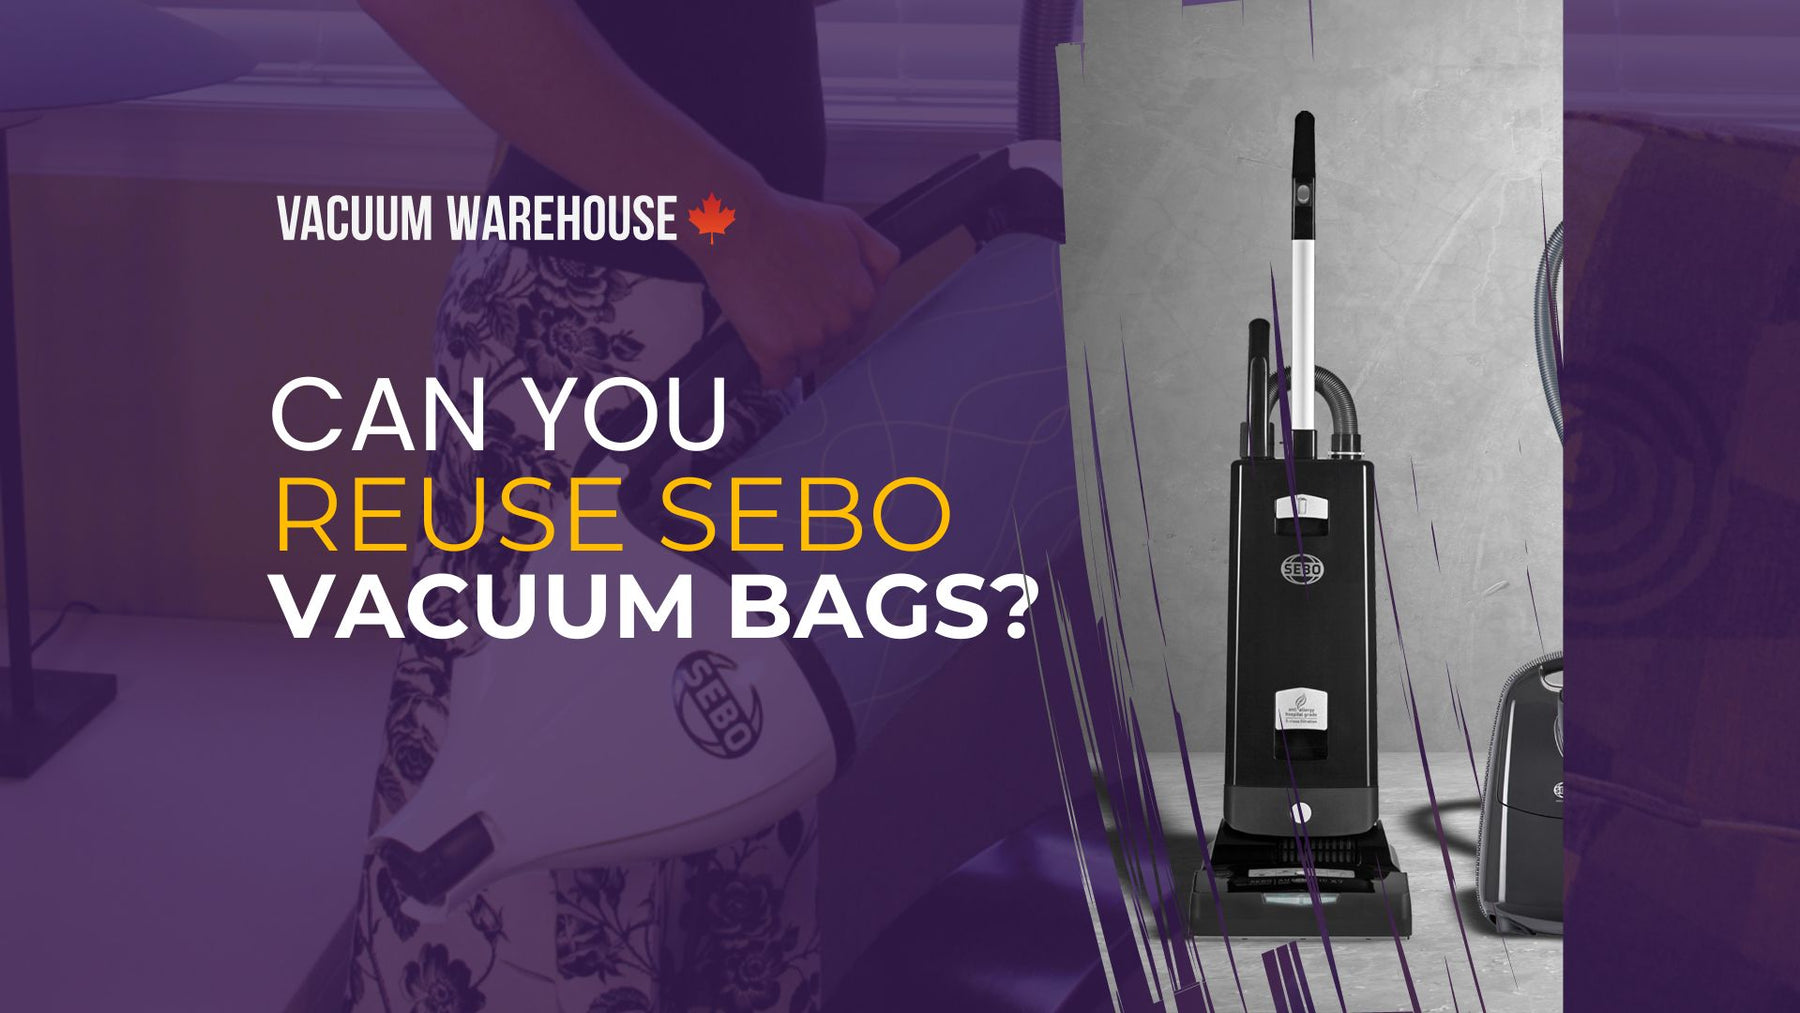 Can you reuse SEBO vacuum bags?